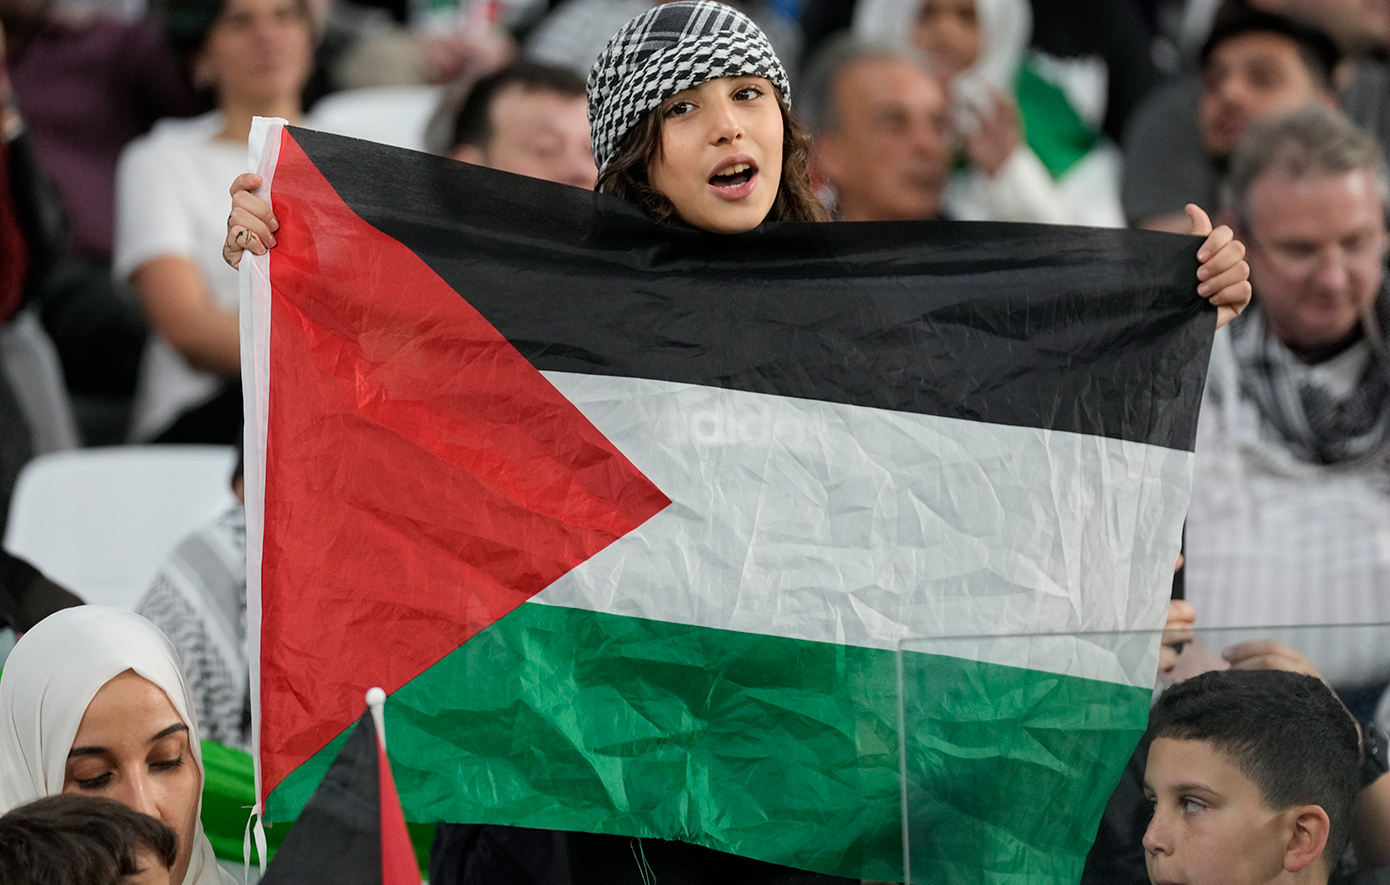 Ιρλανδία, Ισπανία και Νορβηγία αναγνωρίζουν κράτος της Παλαιστίνης &#8211; Η ισραηλινή απάντηση, ανακαλούνται πρεσβευτές